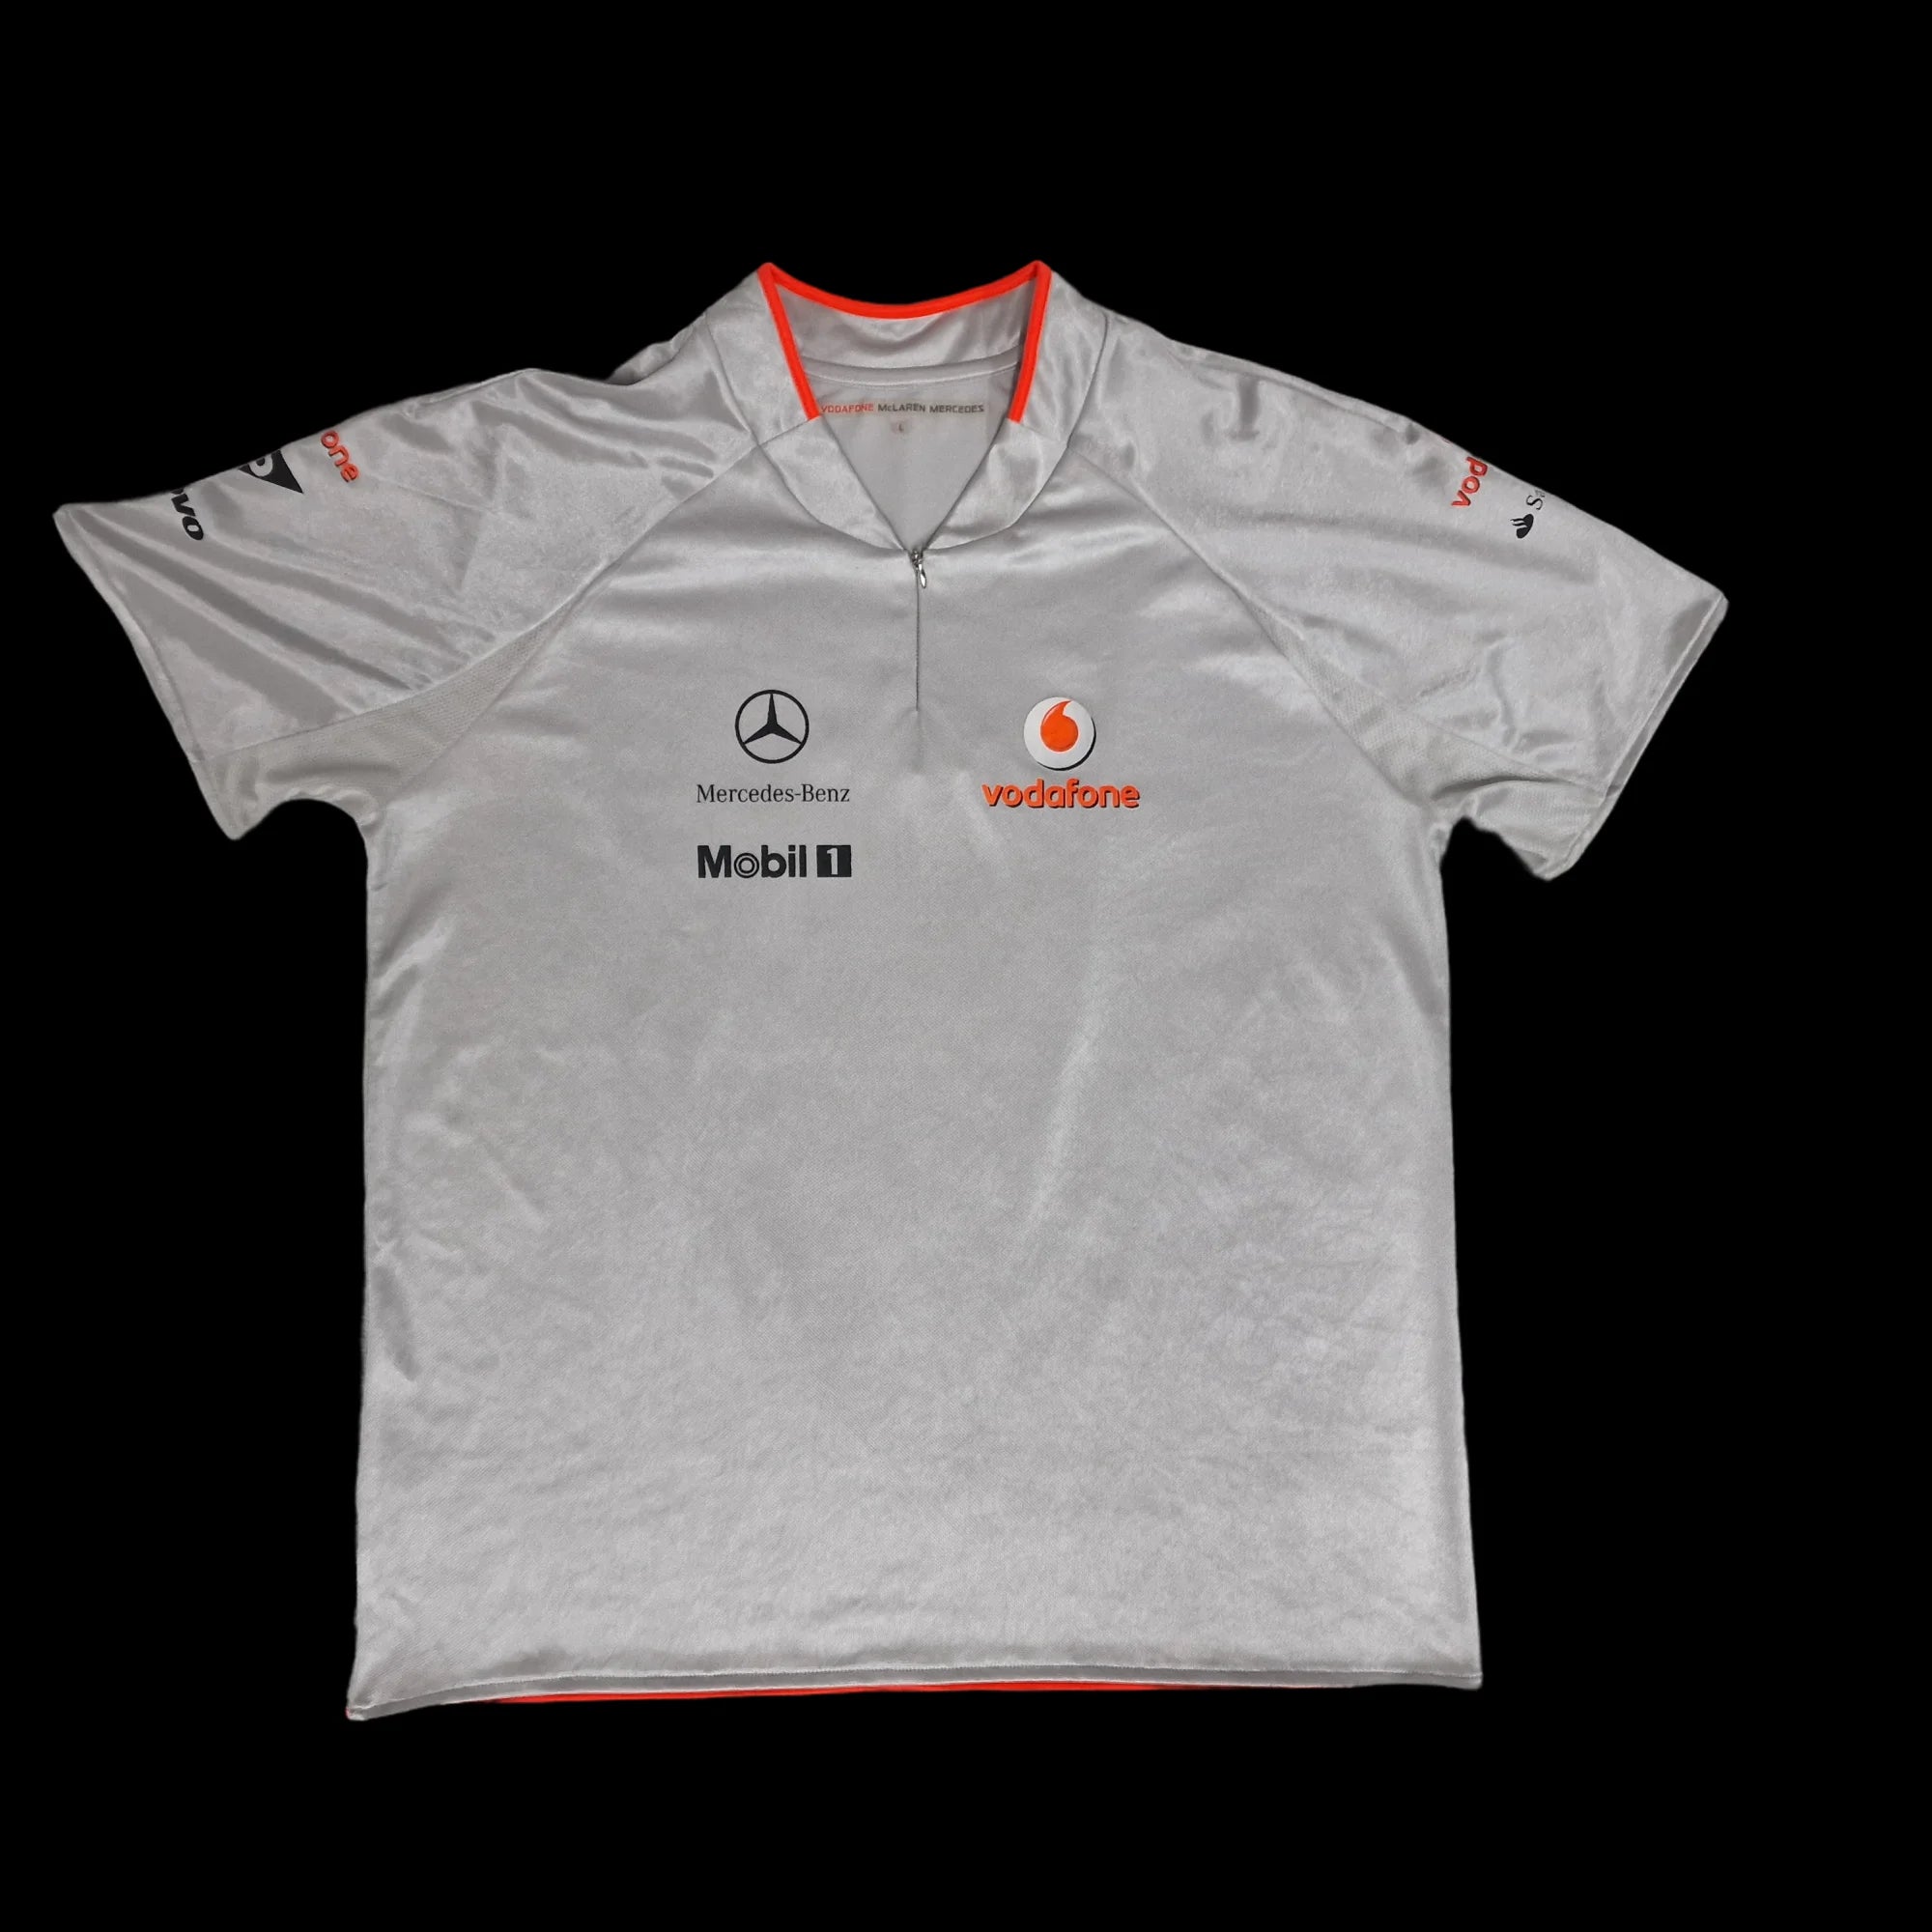 Formula 1 McLaren Racing Team Top UK Large 2009 - T-Shirts